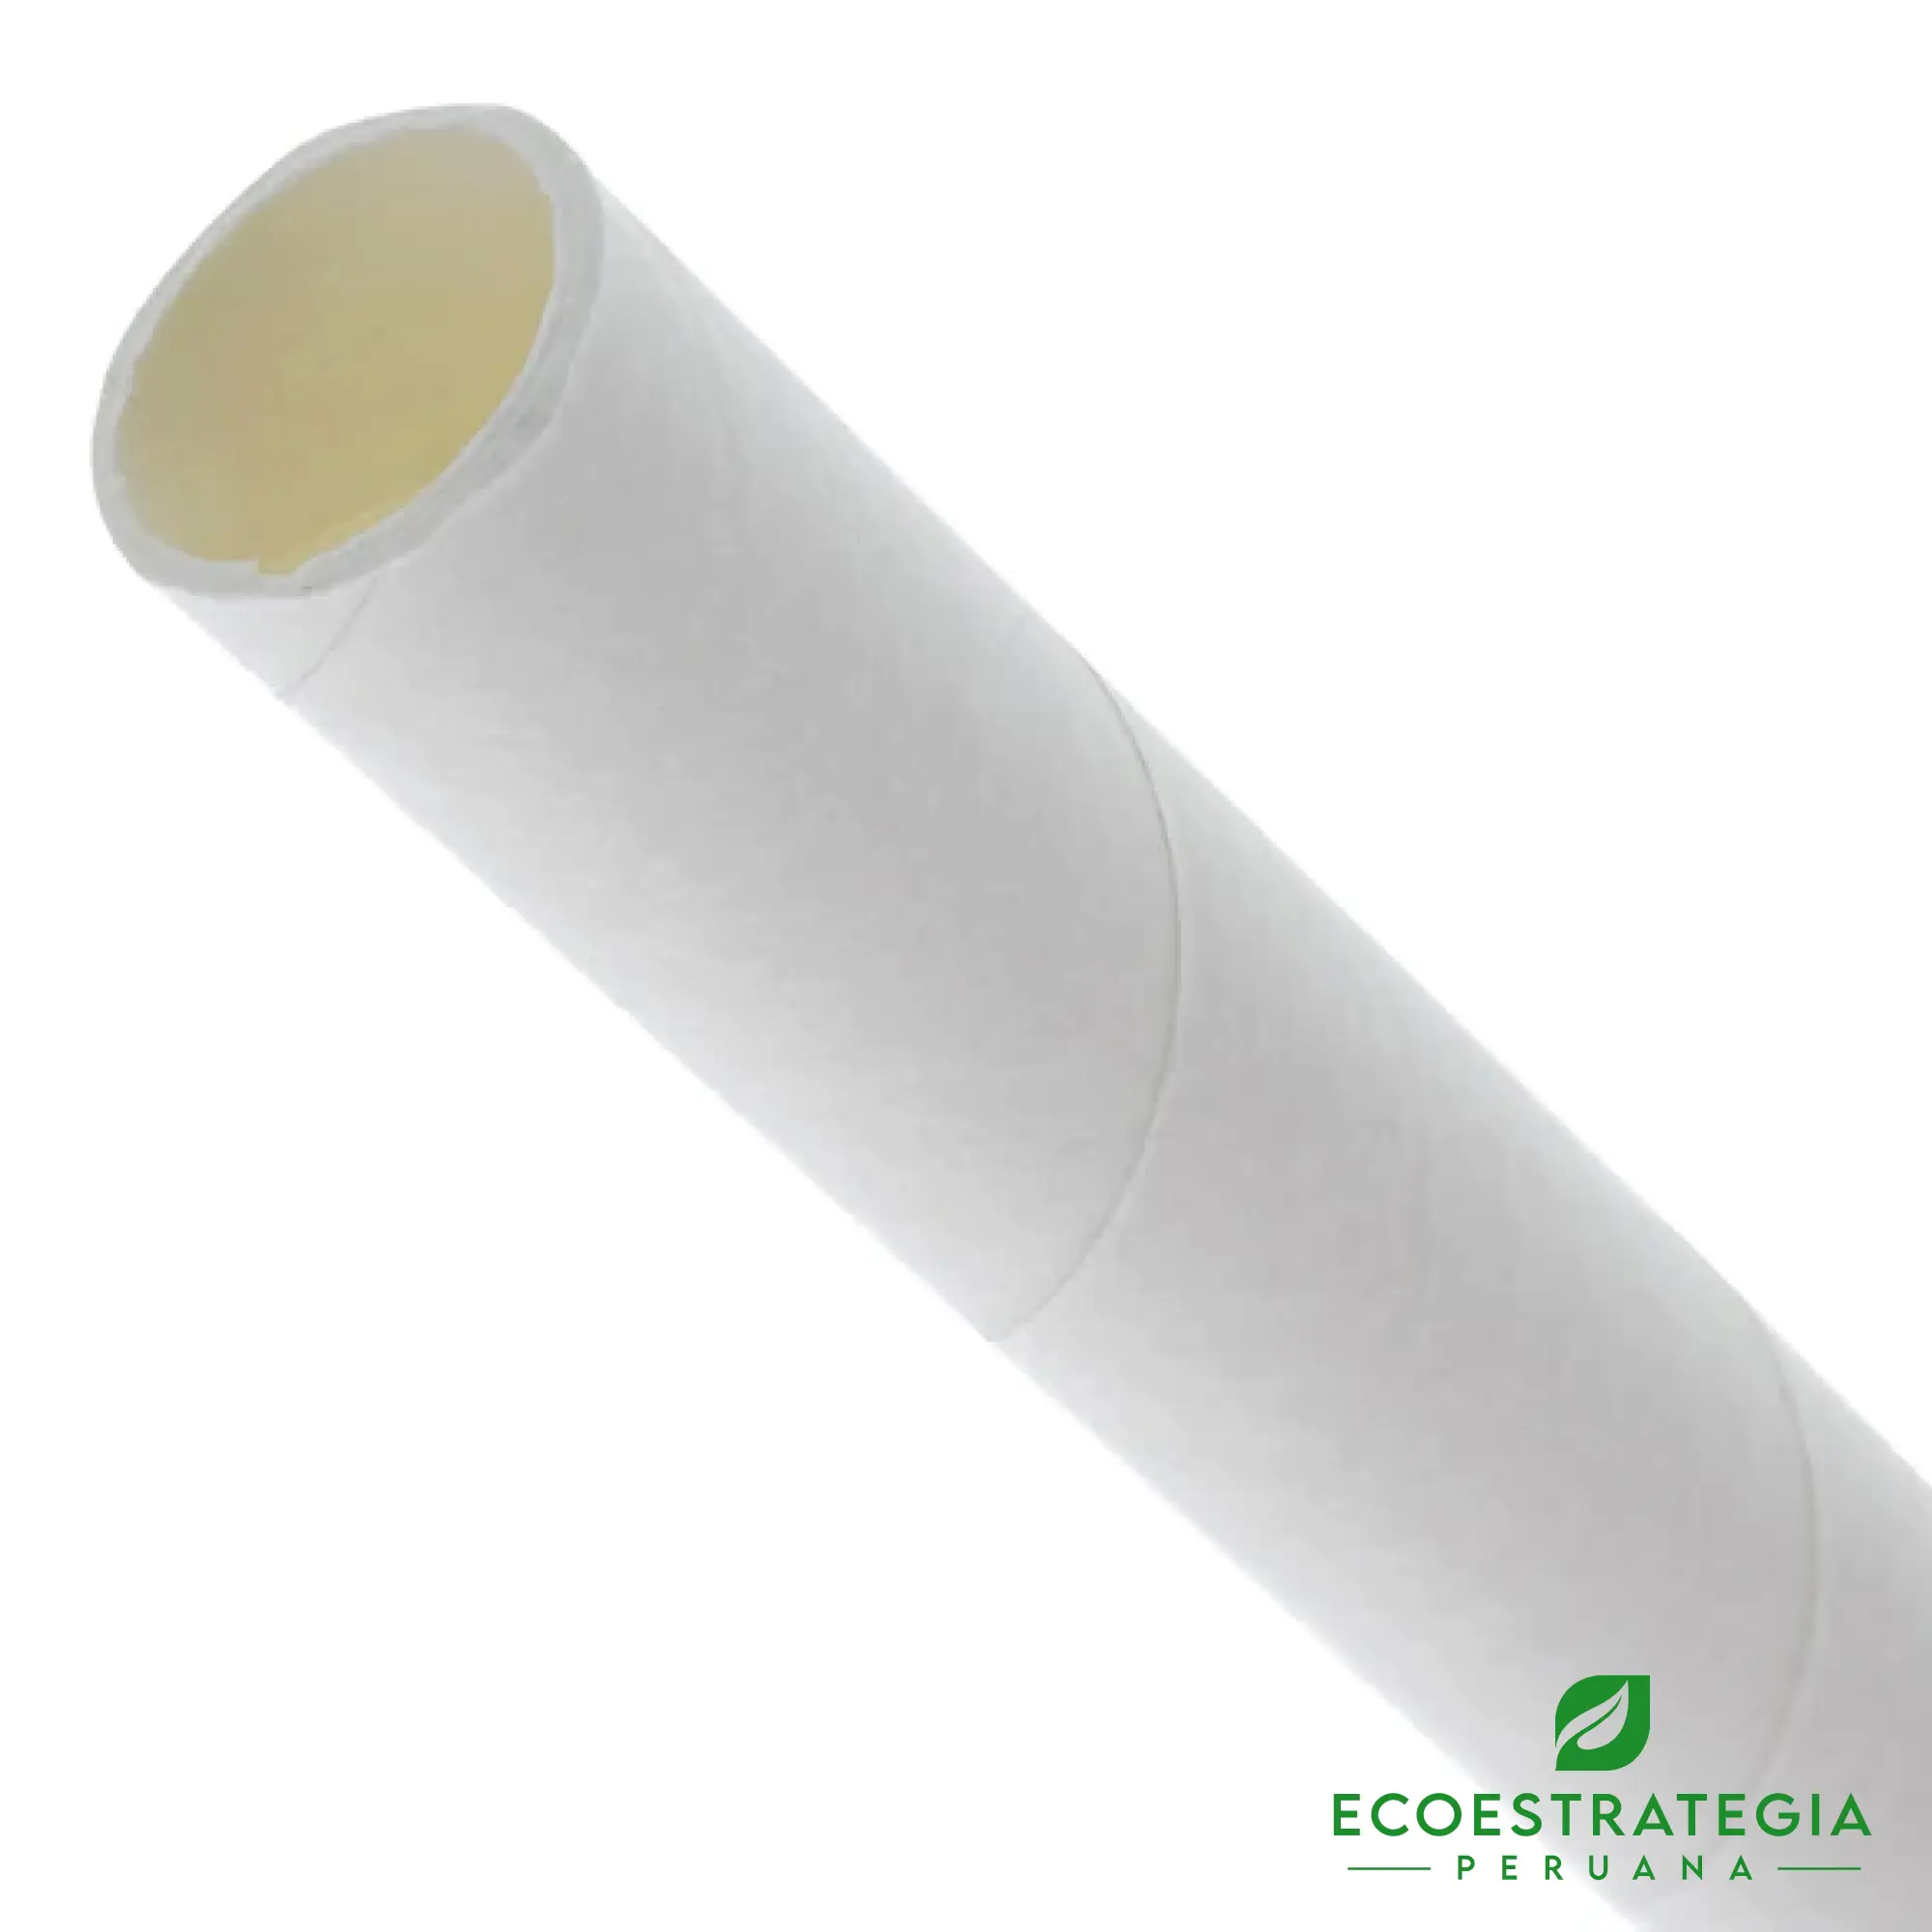 El sorbete de 12mm eper12 es también conocido como corbetón biodegradable de papel, sorbetón 12 mm, sorbete biodegradable, sorbete compostable, sorbetón de papel, sorbetón 100% biodegradable y compostable, sorbetón biodegradable transparente 12, sorbete transparente 20 cms, cañitas biodegradables, sorbetón comestible, sorbetón precio, sorbetes comestibles pdf, sorbetes biodegradable Perú, sorbetón, sorbetones sueltos, sorbetón compostables con estuche, sorbete biodegradable 20 cm, fabricante de sorbetón, distribuidor de sorbetón, mayorista de sorbetones, envases biodegradables, envase biodegradable, envase biodegradables para mayoristas, envase biodegradables al por mayor, envases biodegradables económicos, envases biodegradables precios, carton biodegradables, envases reciclables , popote reciclable, cañita biodegradable, pitillo biodegradable, pitillo reciclable, pitillo ecológico, caña biodegradable, cañita reciclable, cañita ecológica